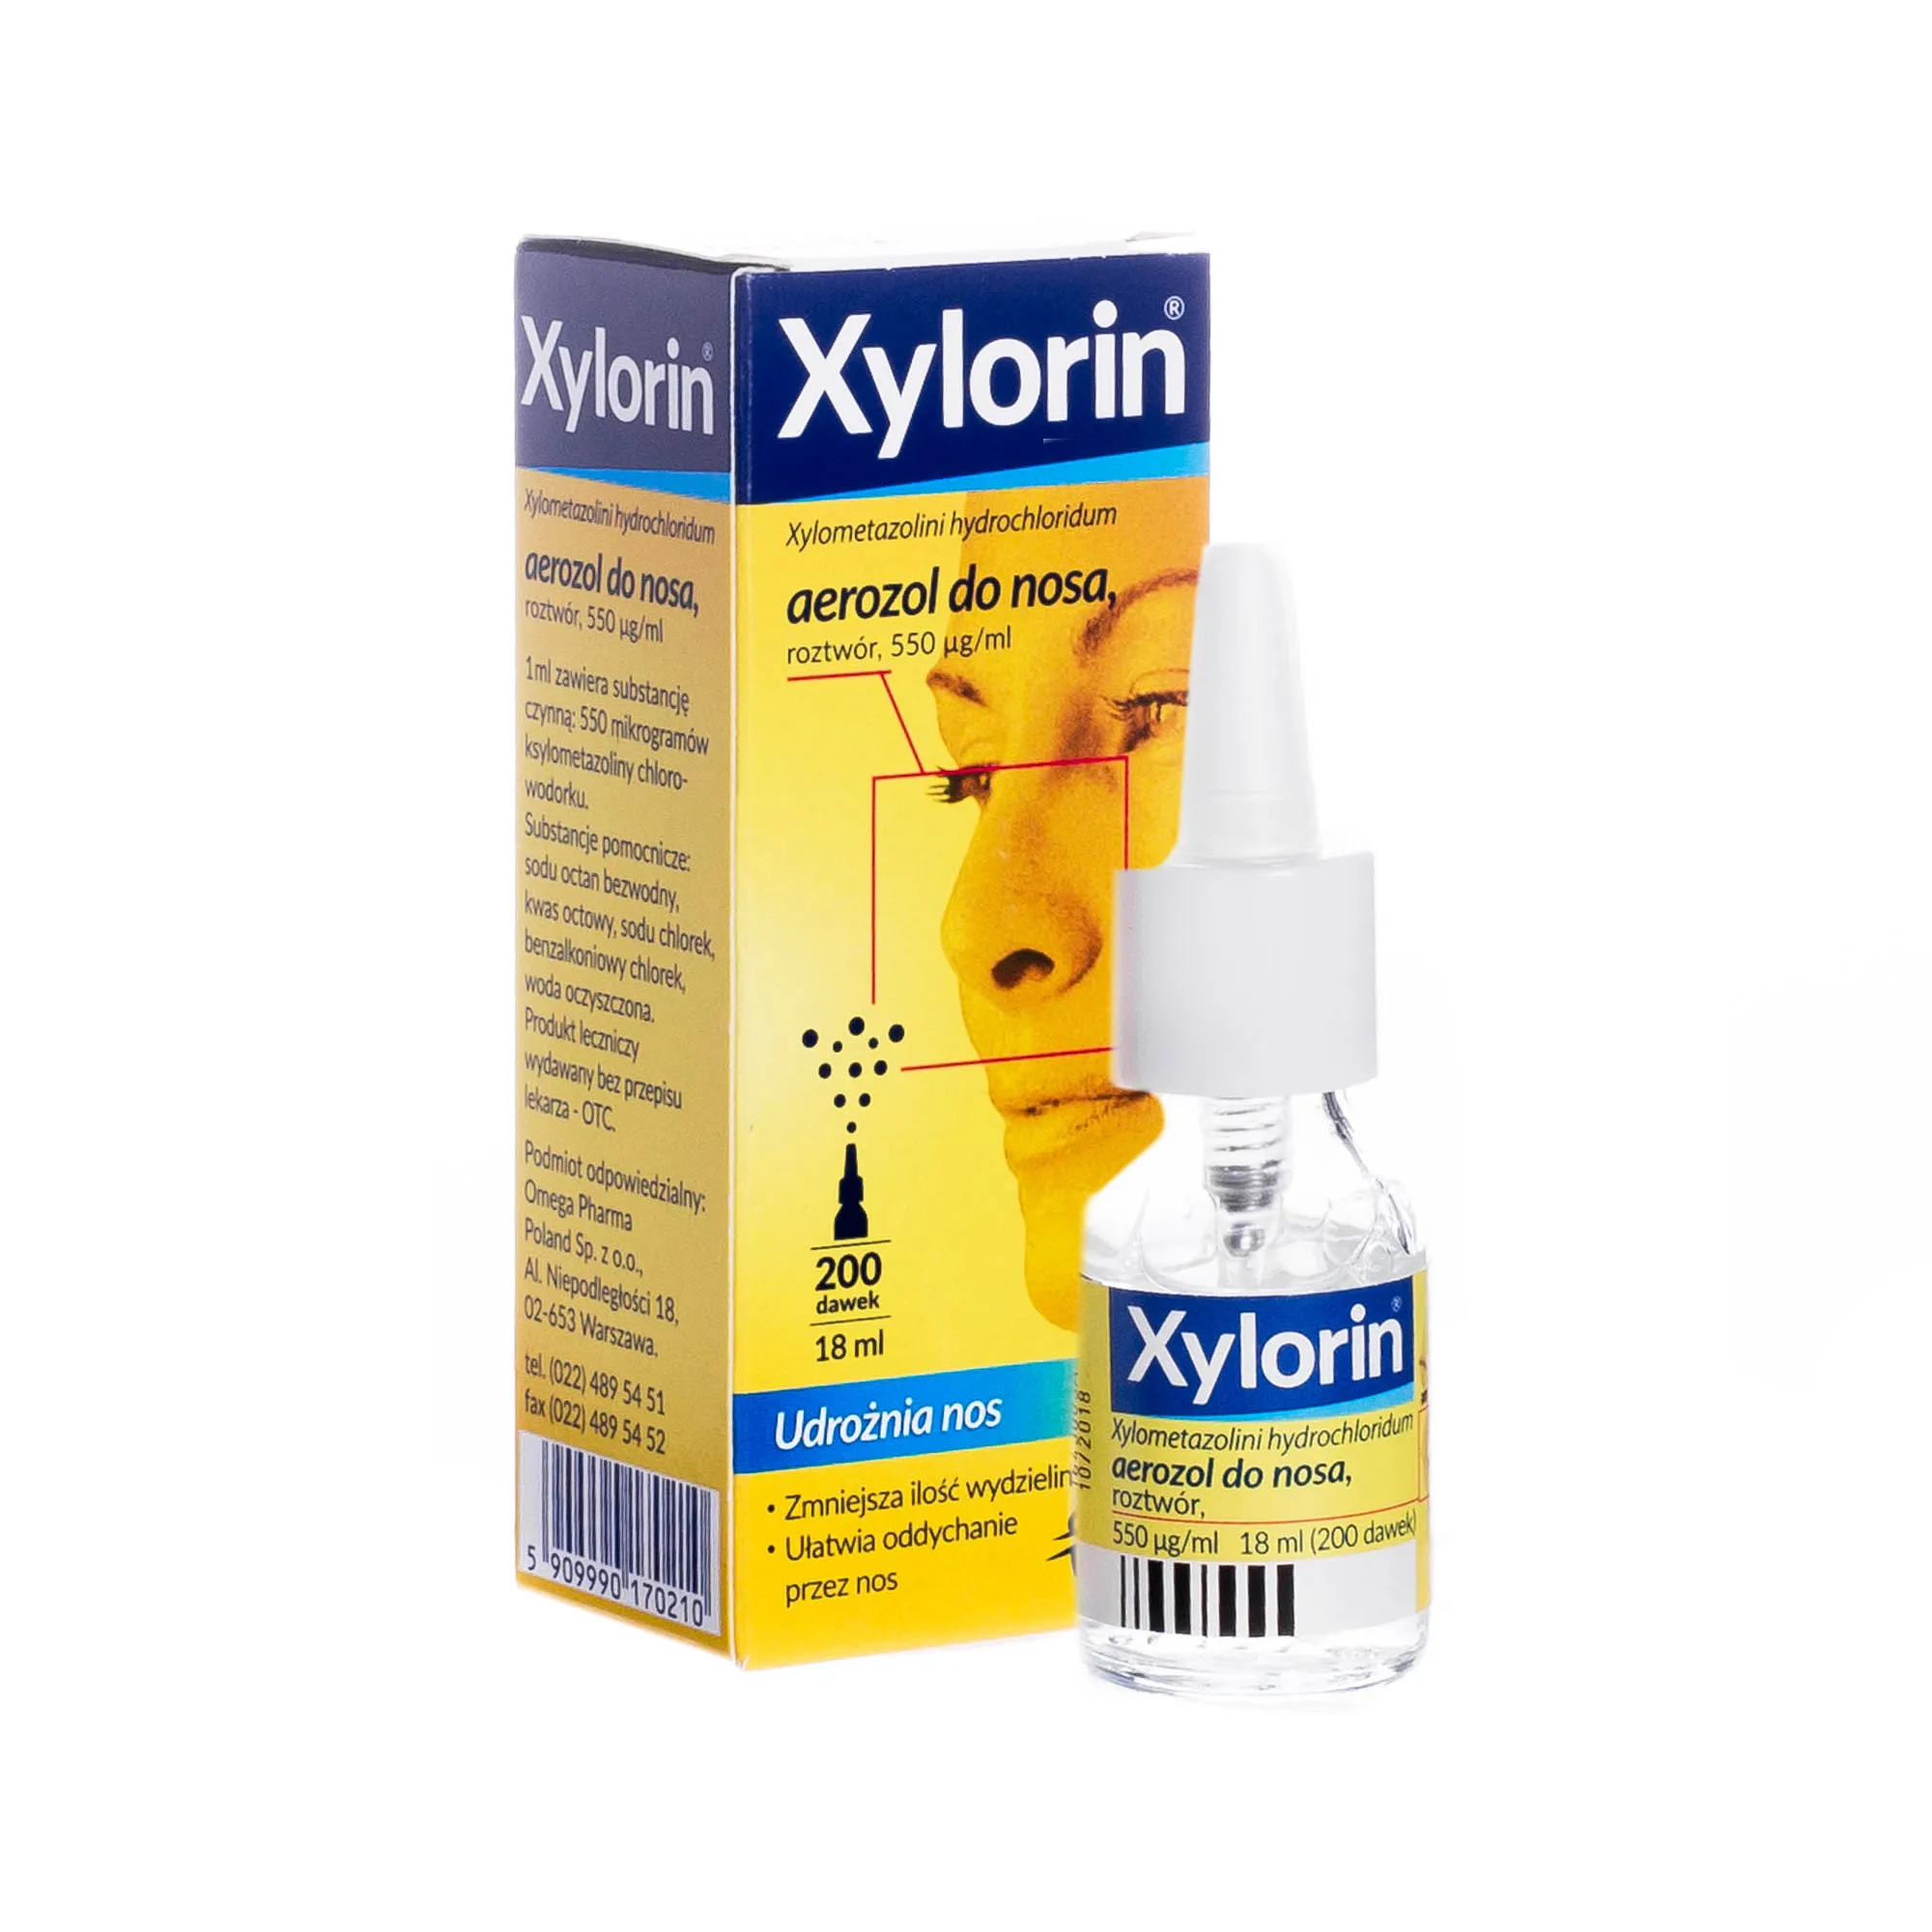 Xylorin, 550 μg/ml, aerozol do nosa, 18 ml